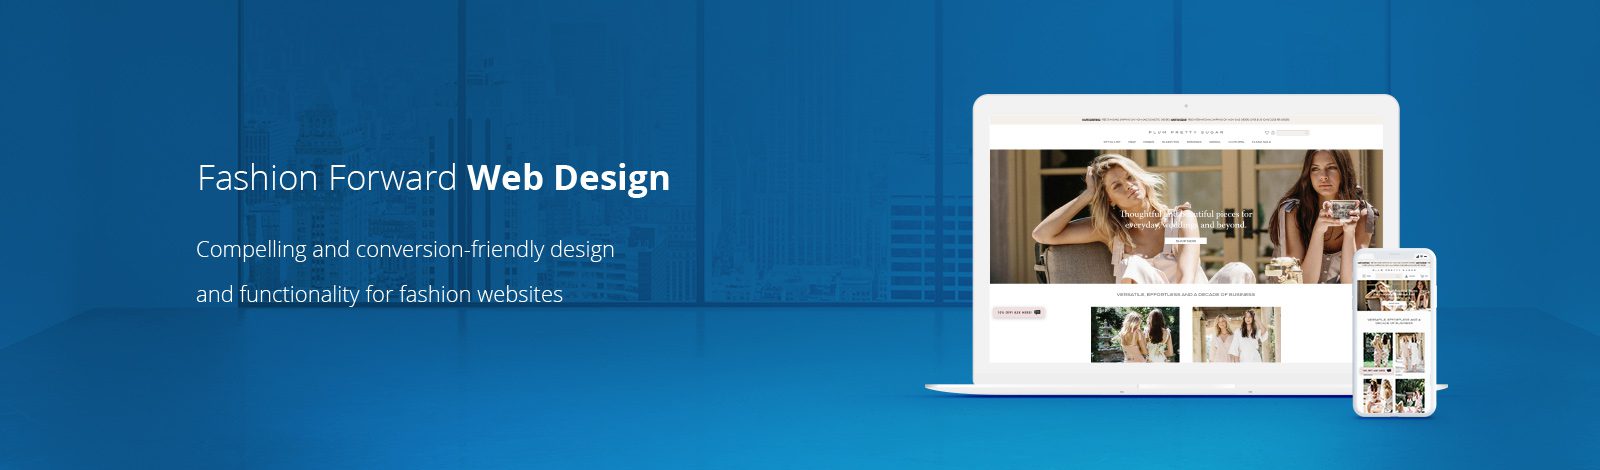 Fashion Website Design & Development Services